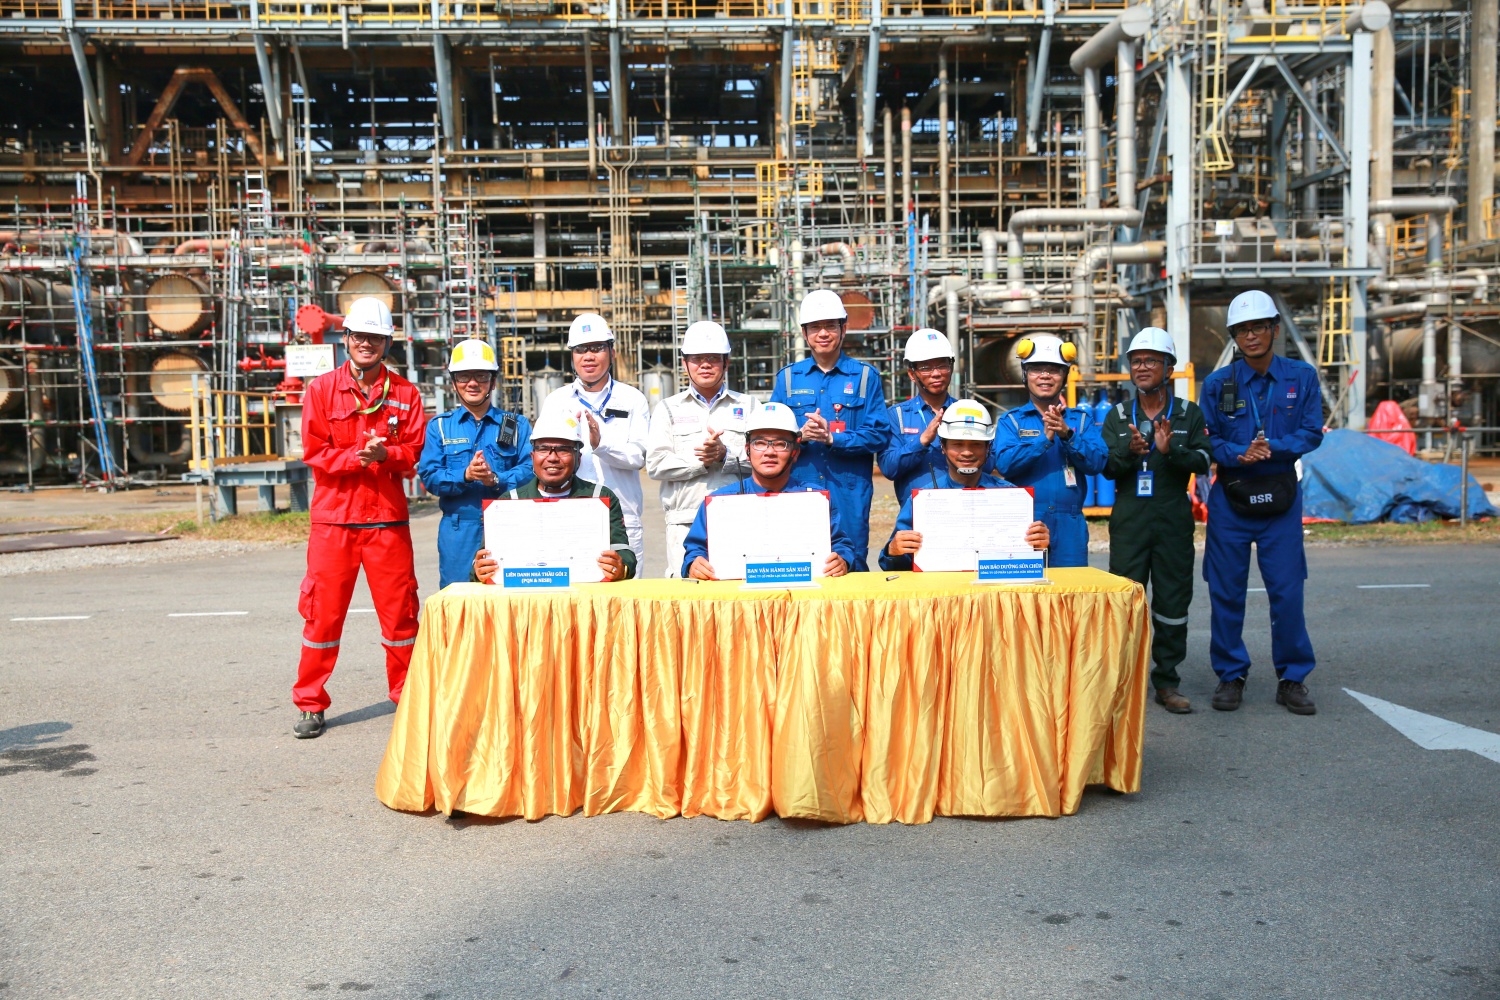 Liên danh nhà thầu PTSC Quảng Ngãi - Newwin Engineering hoàn thành công tác bảo dưỡng cơ khí và bàn giao phân xưởng Chưng cất dầu thô